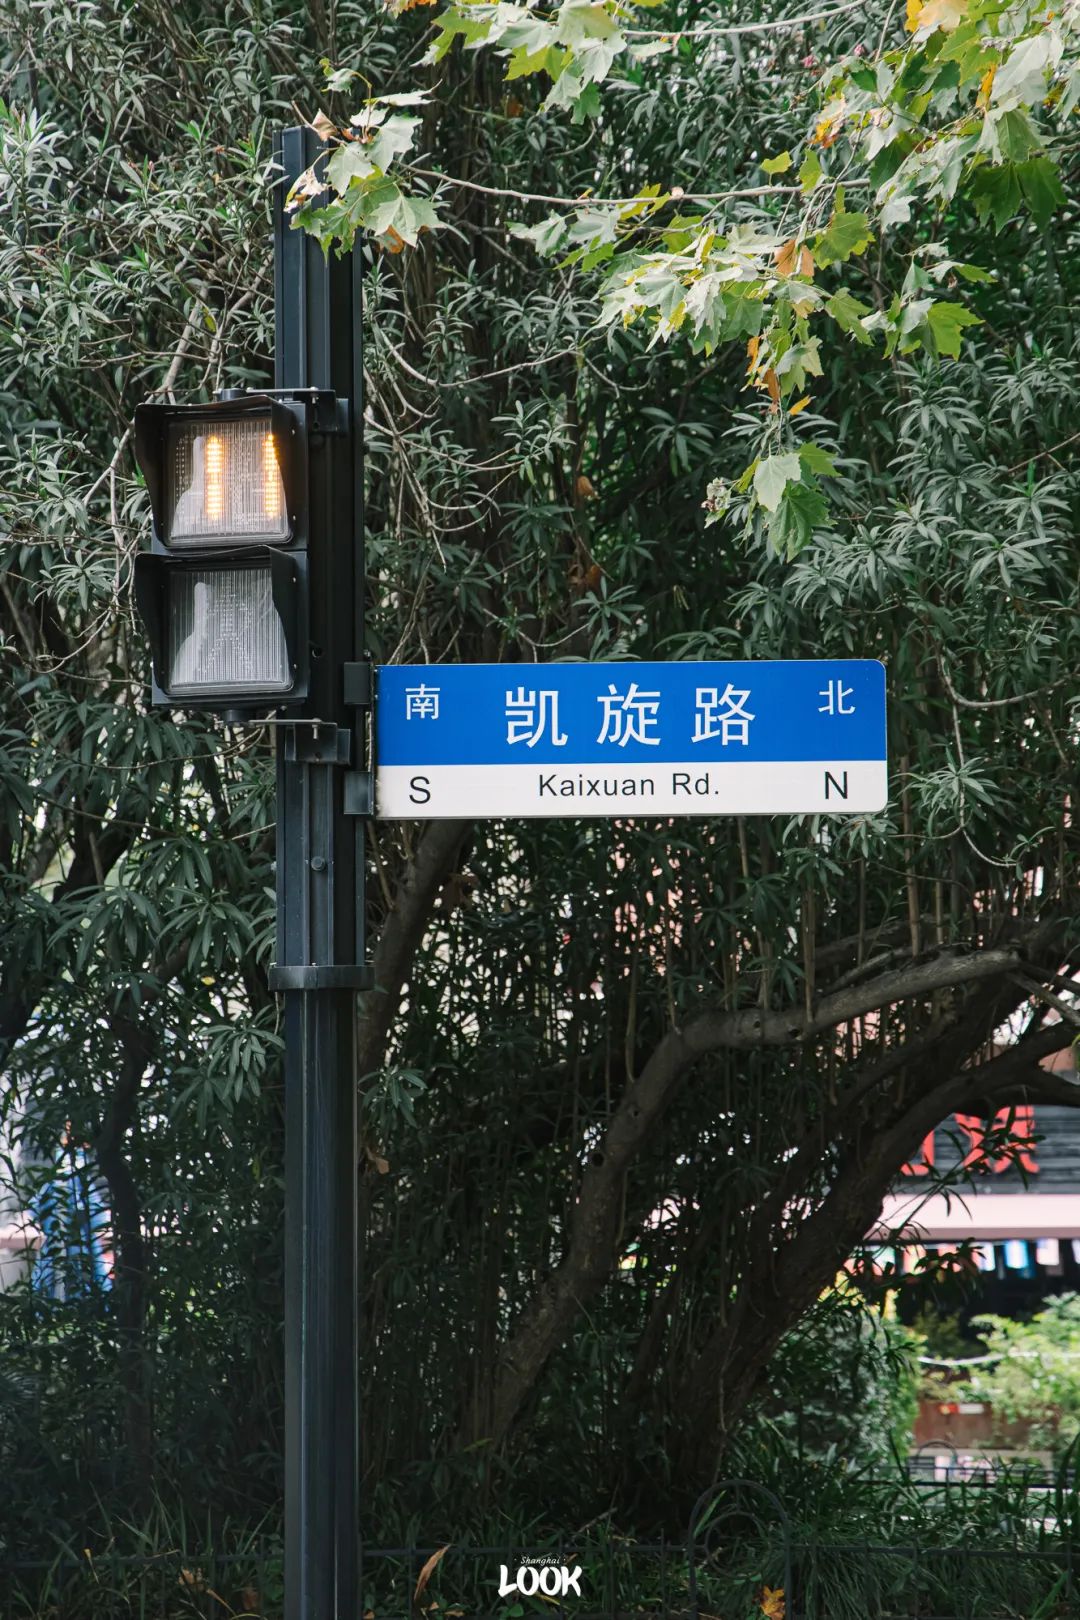 【携程攻略】上海淮海路景点,淮海路，新上海的路名。上海著名商业街。路两旁的法国梧桐，西式风格…